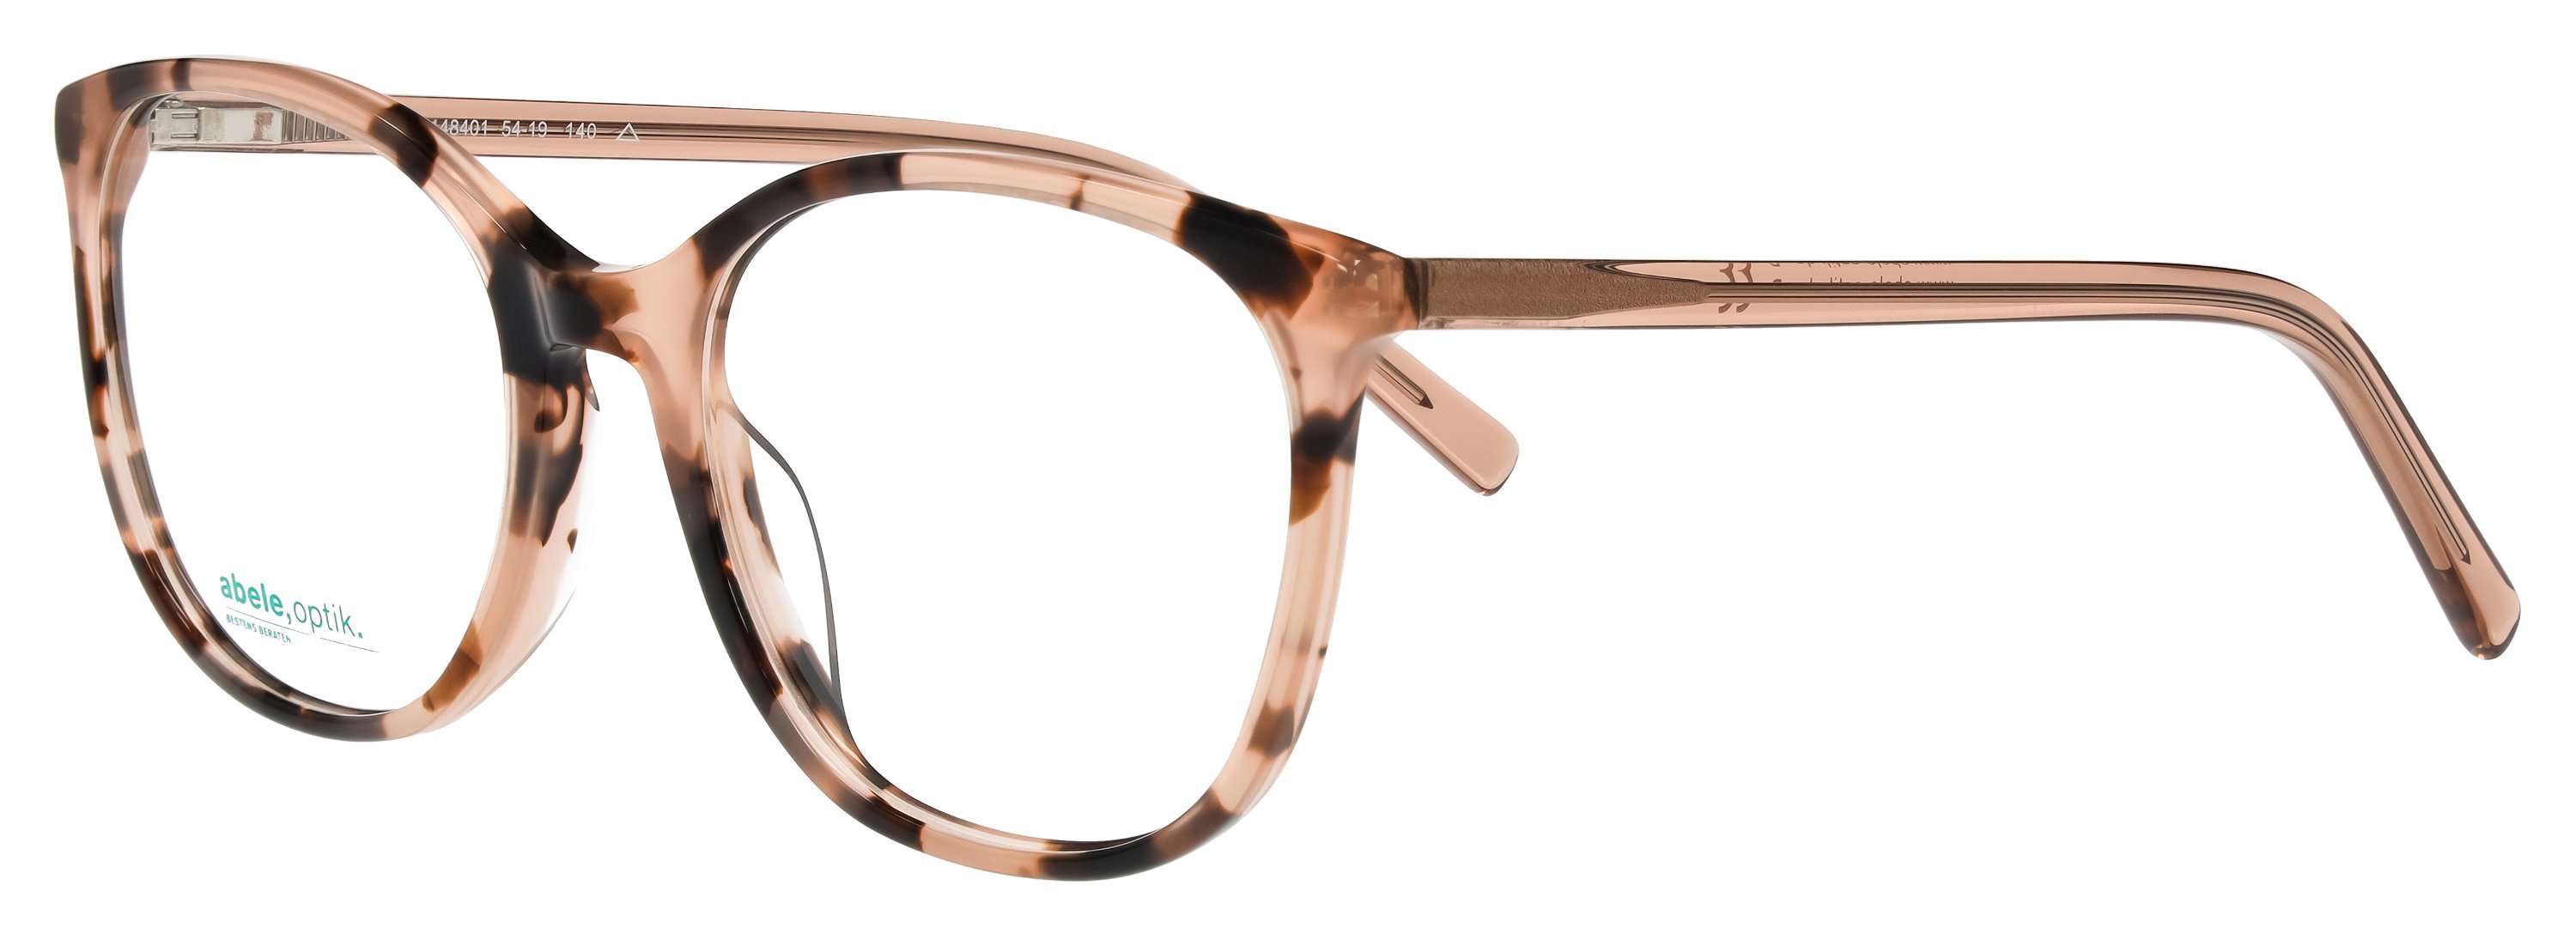 abele optik Brille für Damen in rosé / braun 148401